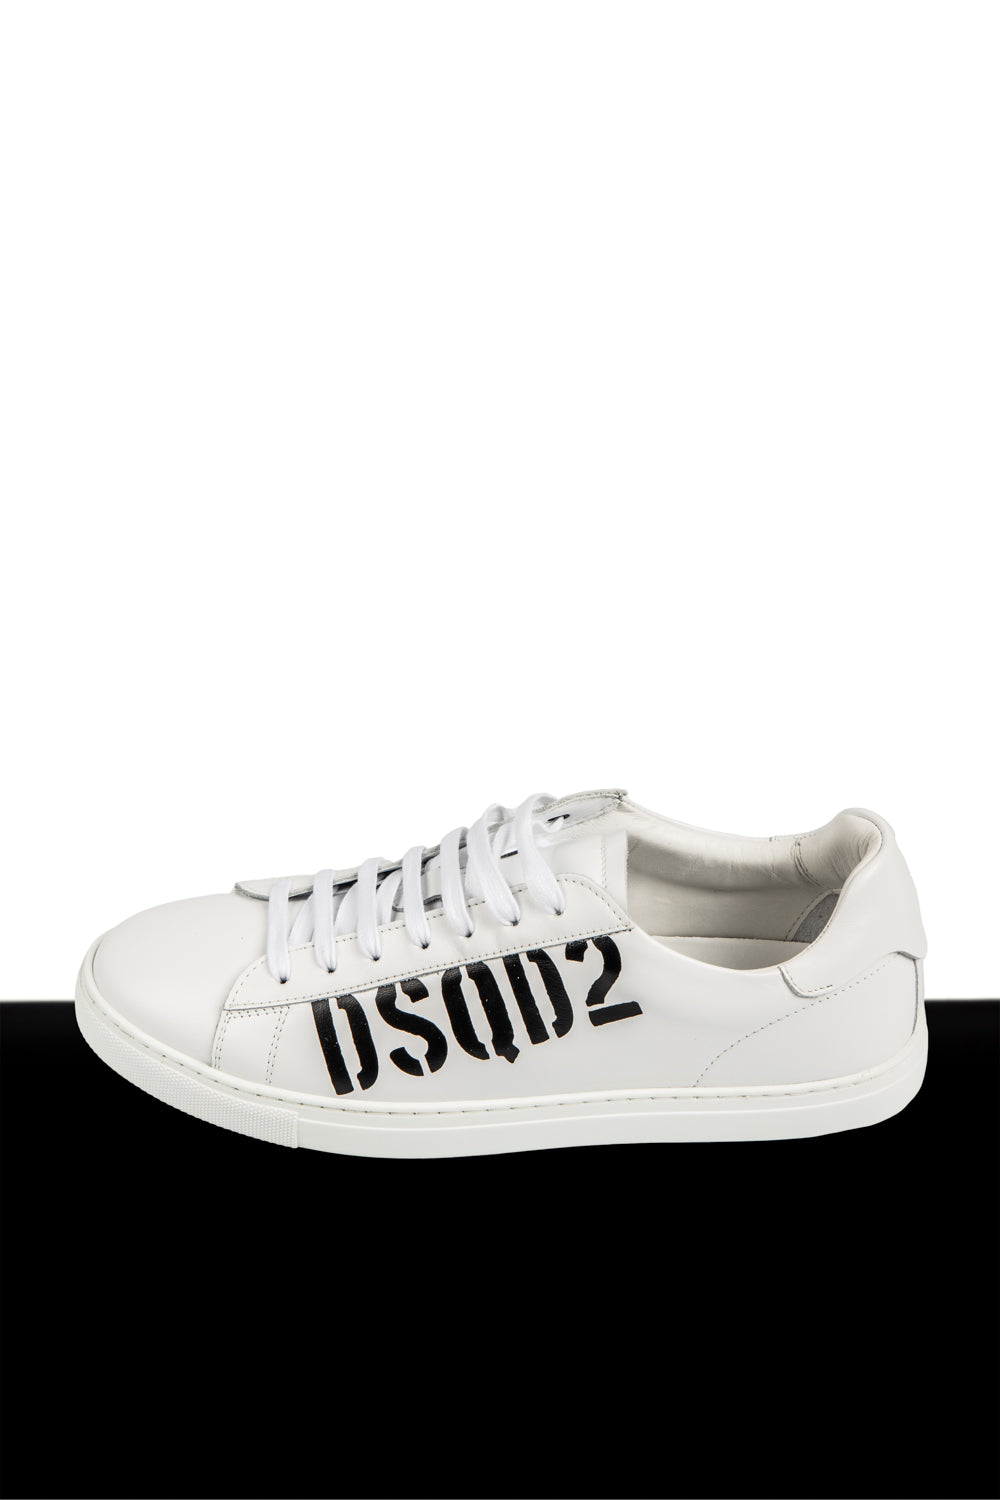 Dsquared2 Sneakers con logo "DSQ2" vista laterale